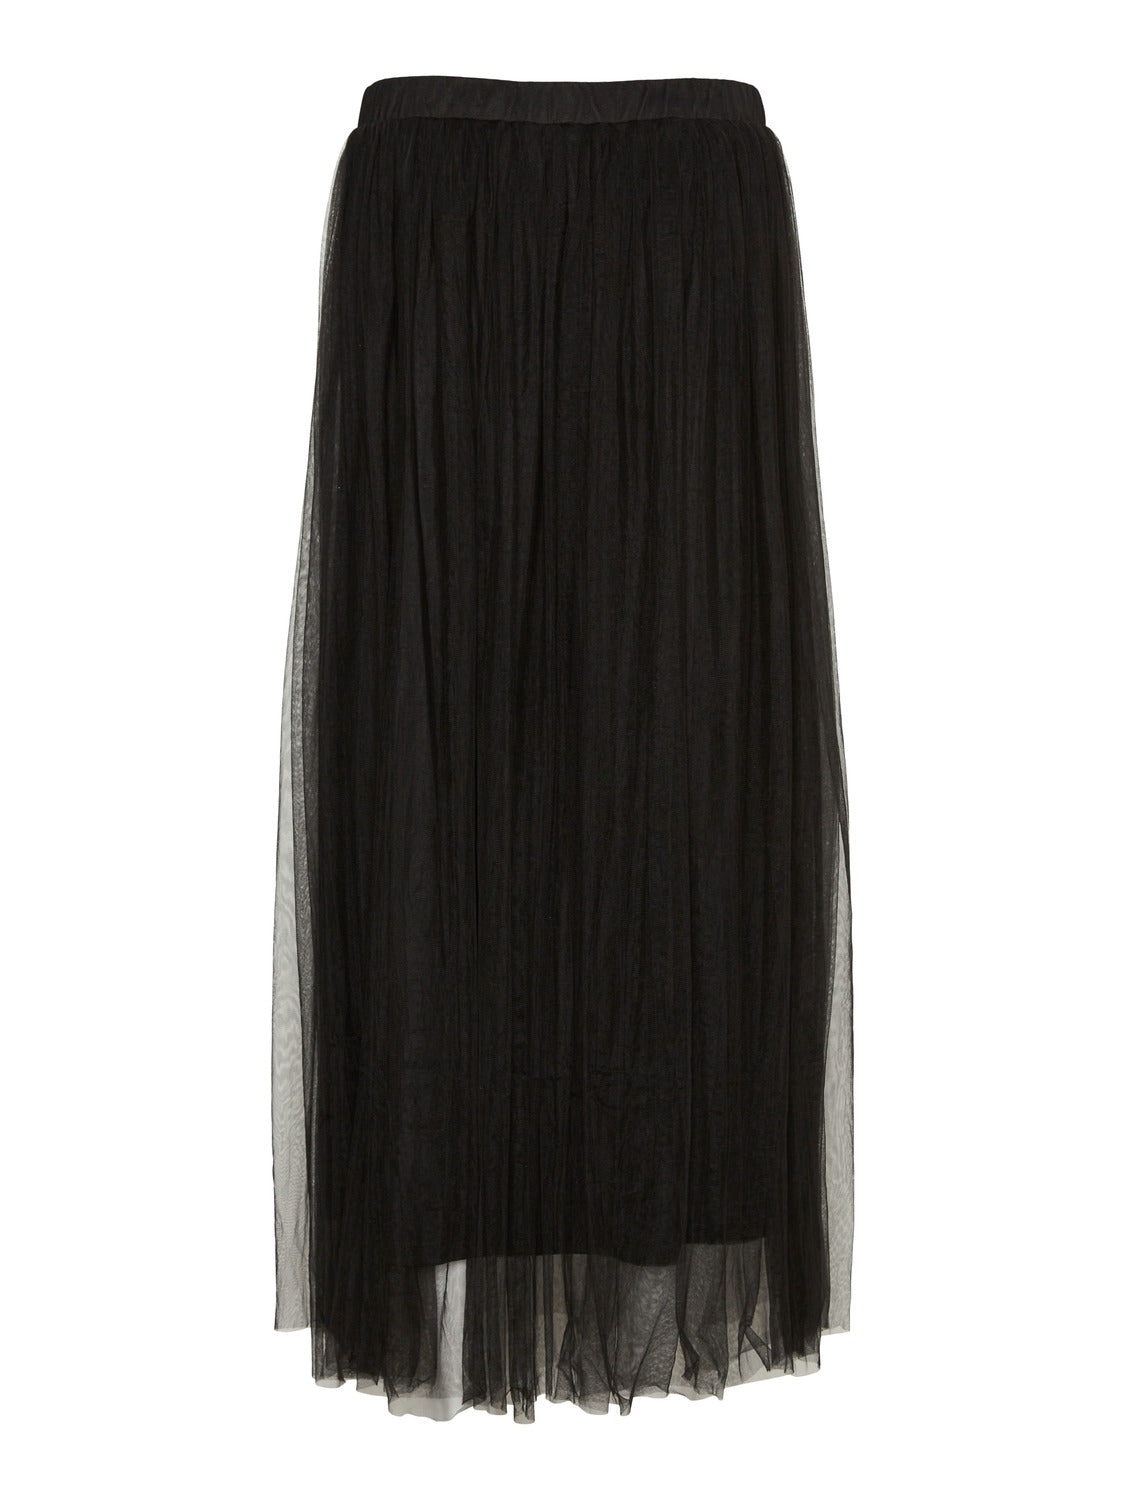 VMEVE Skirt - black